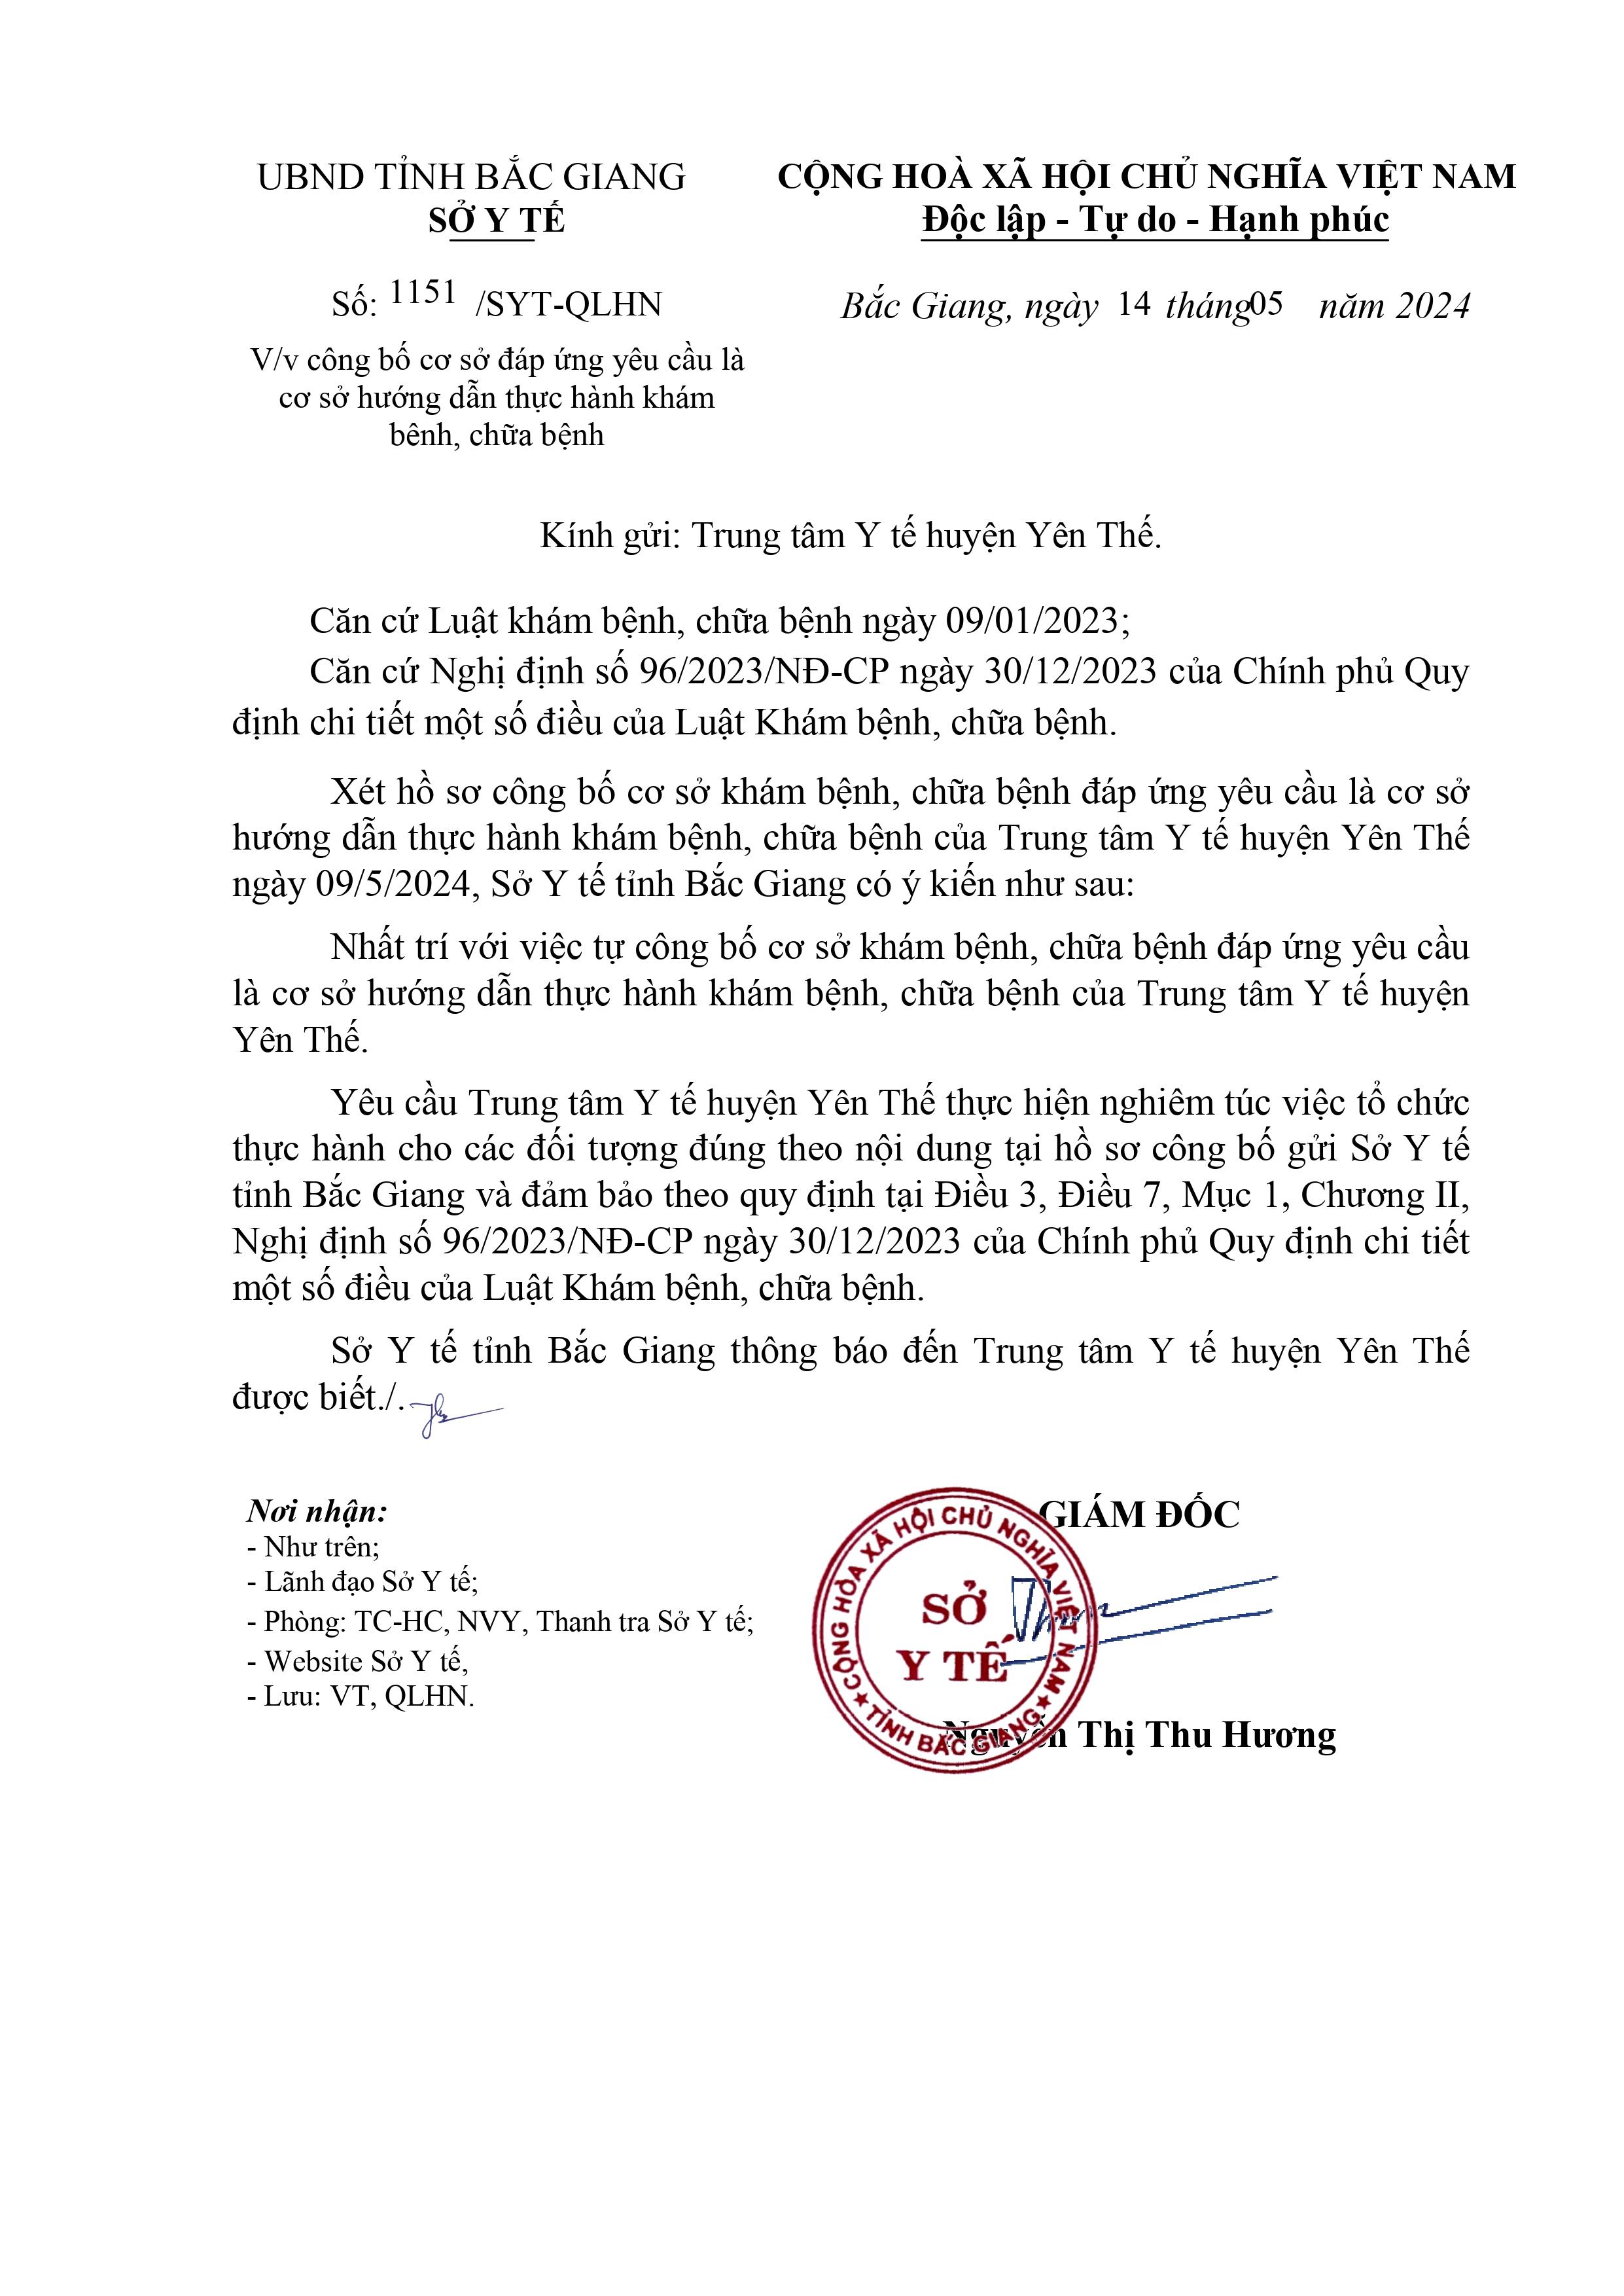 Trung tâm Y tế huyện Yên Thế được công bố là cơ sở hướng dẫn thực hành khám bệnh, chữa bệnh|https://trungtamytehuyenyenthe.vn/ja_JP/chi-tiet-tin-tuc/-/asset_publisher/M0UUAFstbTMq/content/trung-tam-y-te-huyen-yen-the-uoc-cong-bo-la-co-so-huong-dan-thuc-hanh-kham-benh-chua-benh